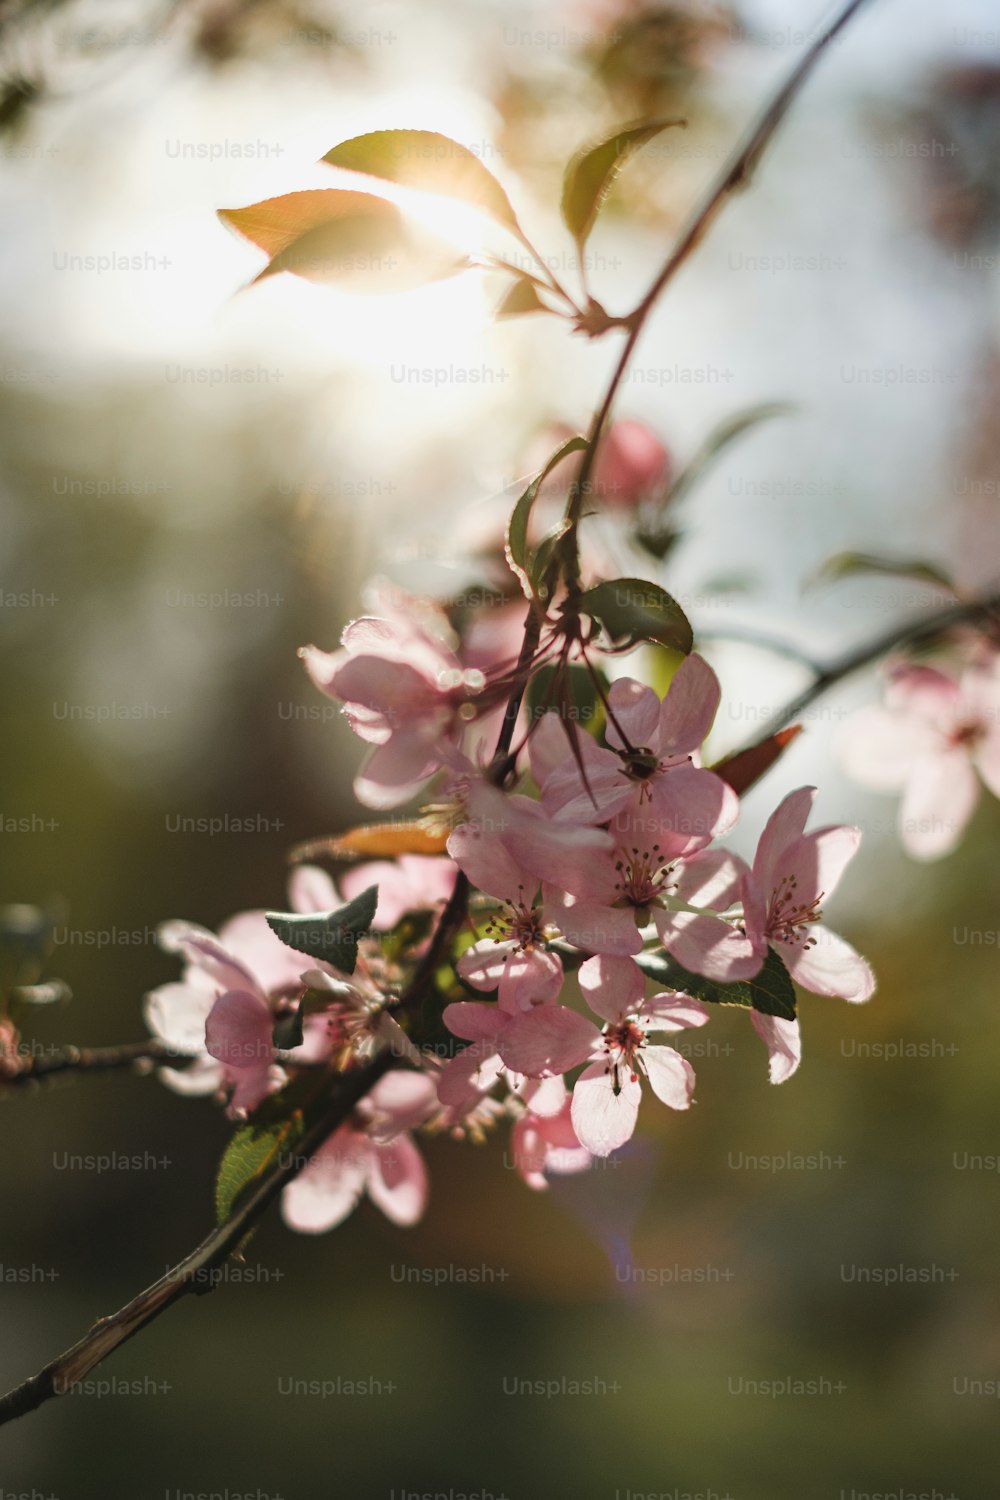 550+ Fotos de Cerezos en Flor  Descargar imágenes gratis en Unsplash